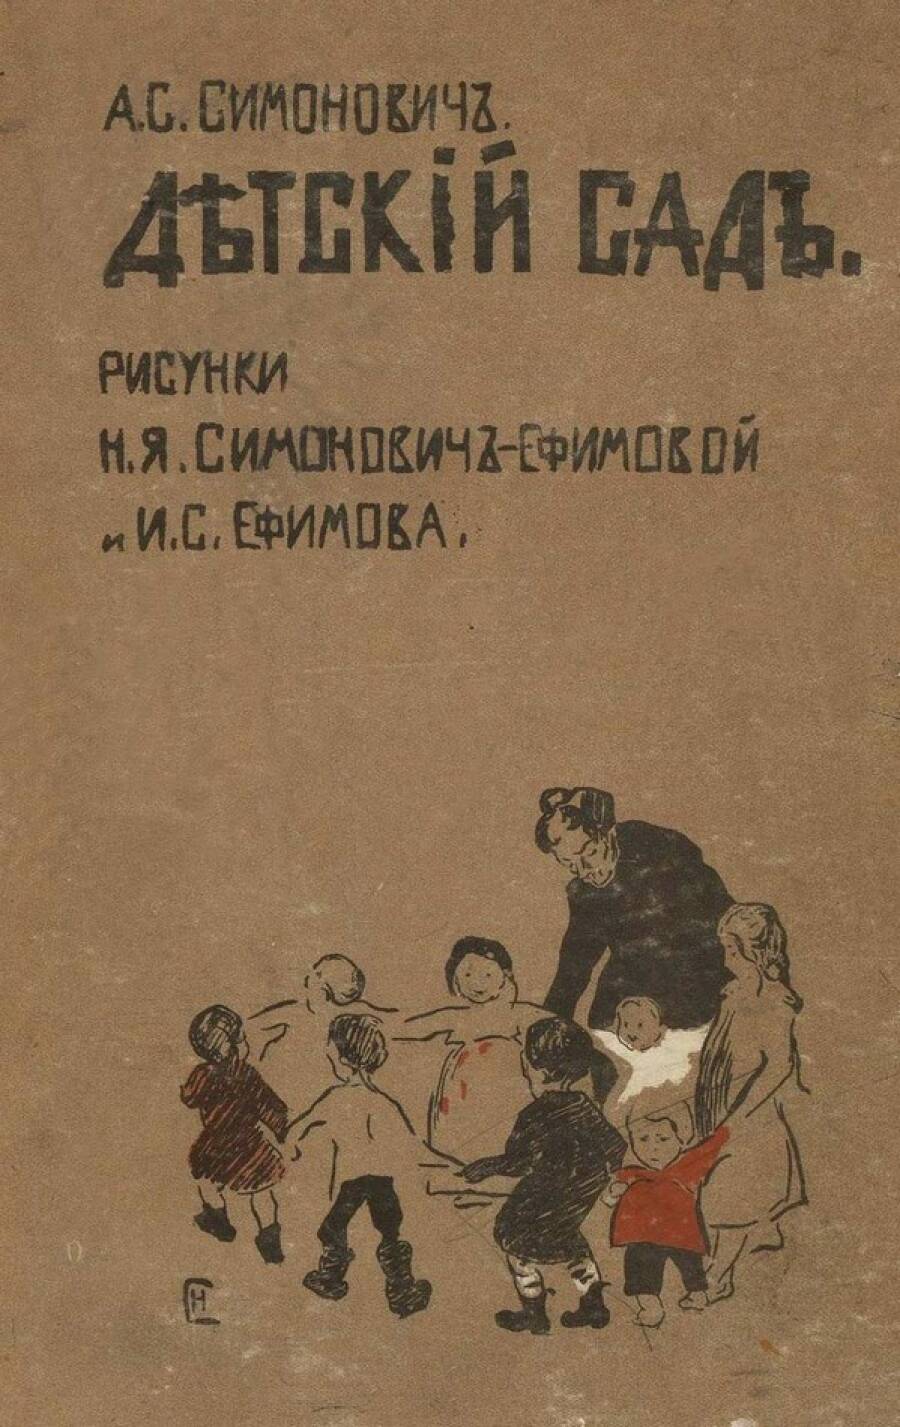 Книга «Детский сад» Аделаиды Симонович